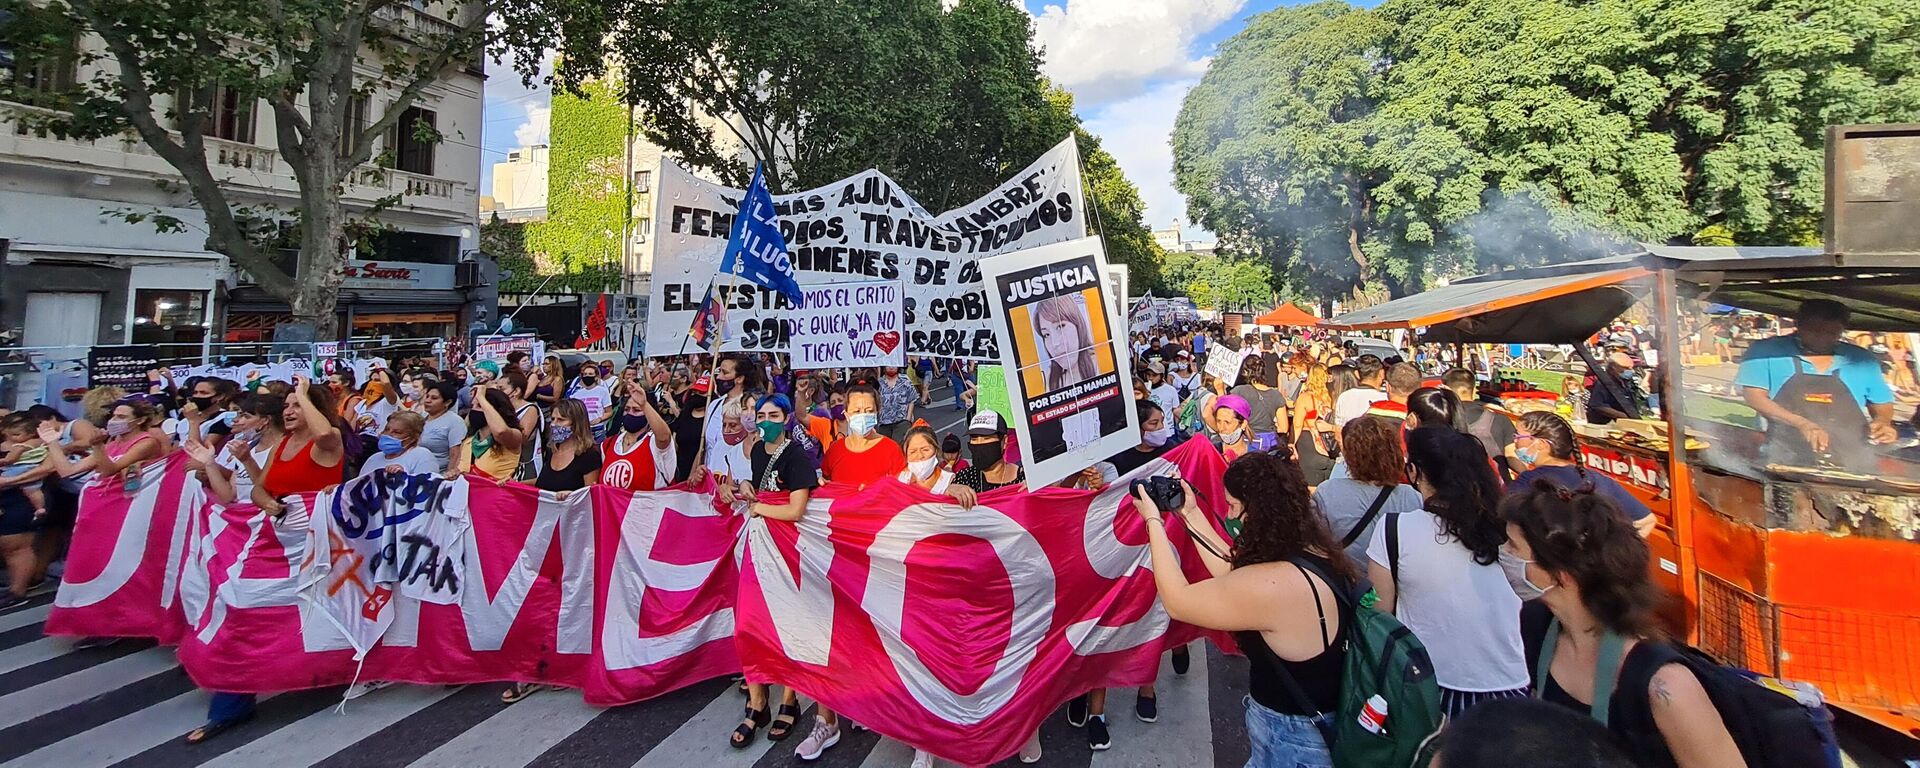 El Día Internacional de la Mujer fue otra jornada de lucha del feminismo fuera del Congreso argentino - Sputnik Mundo, 1920, 20.07.2021